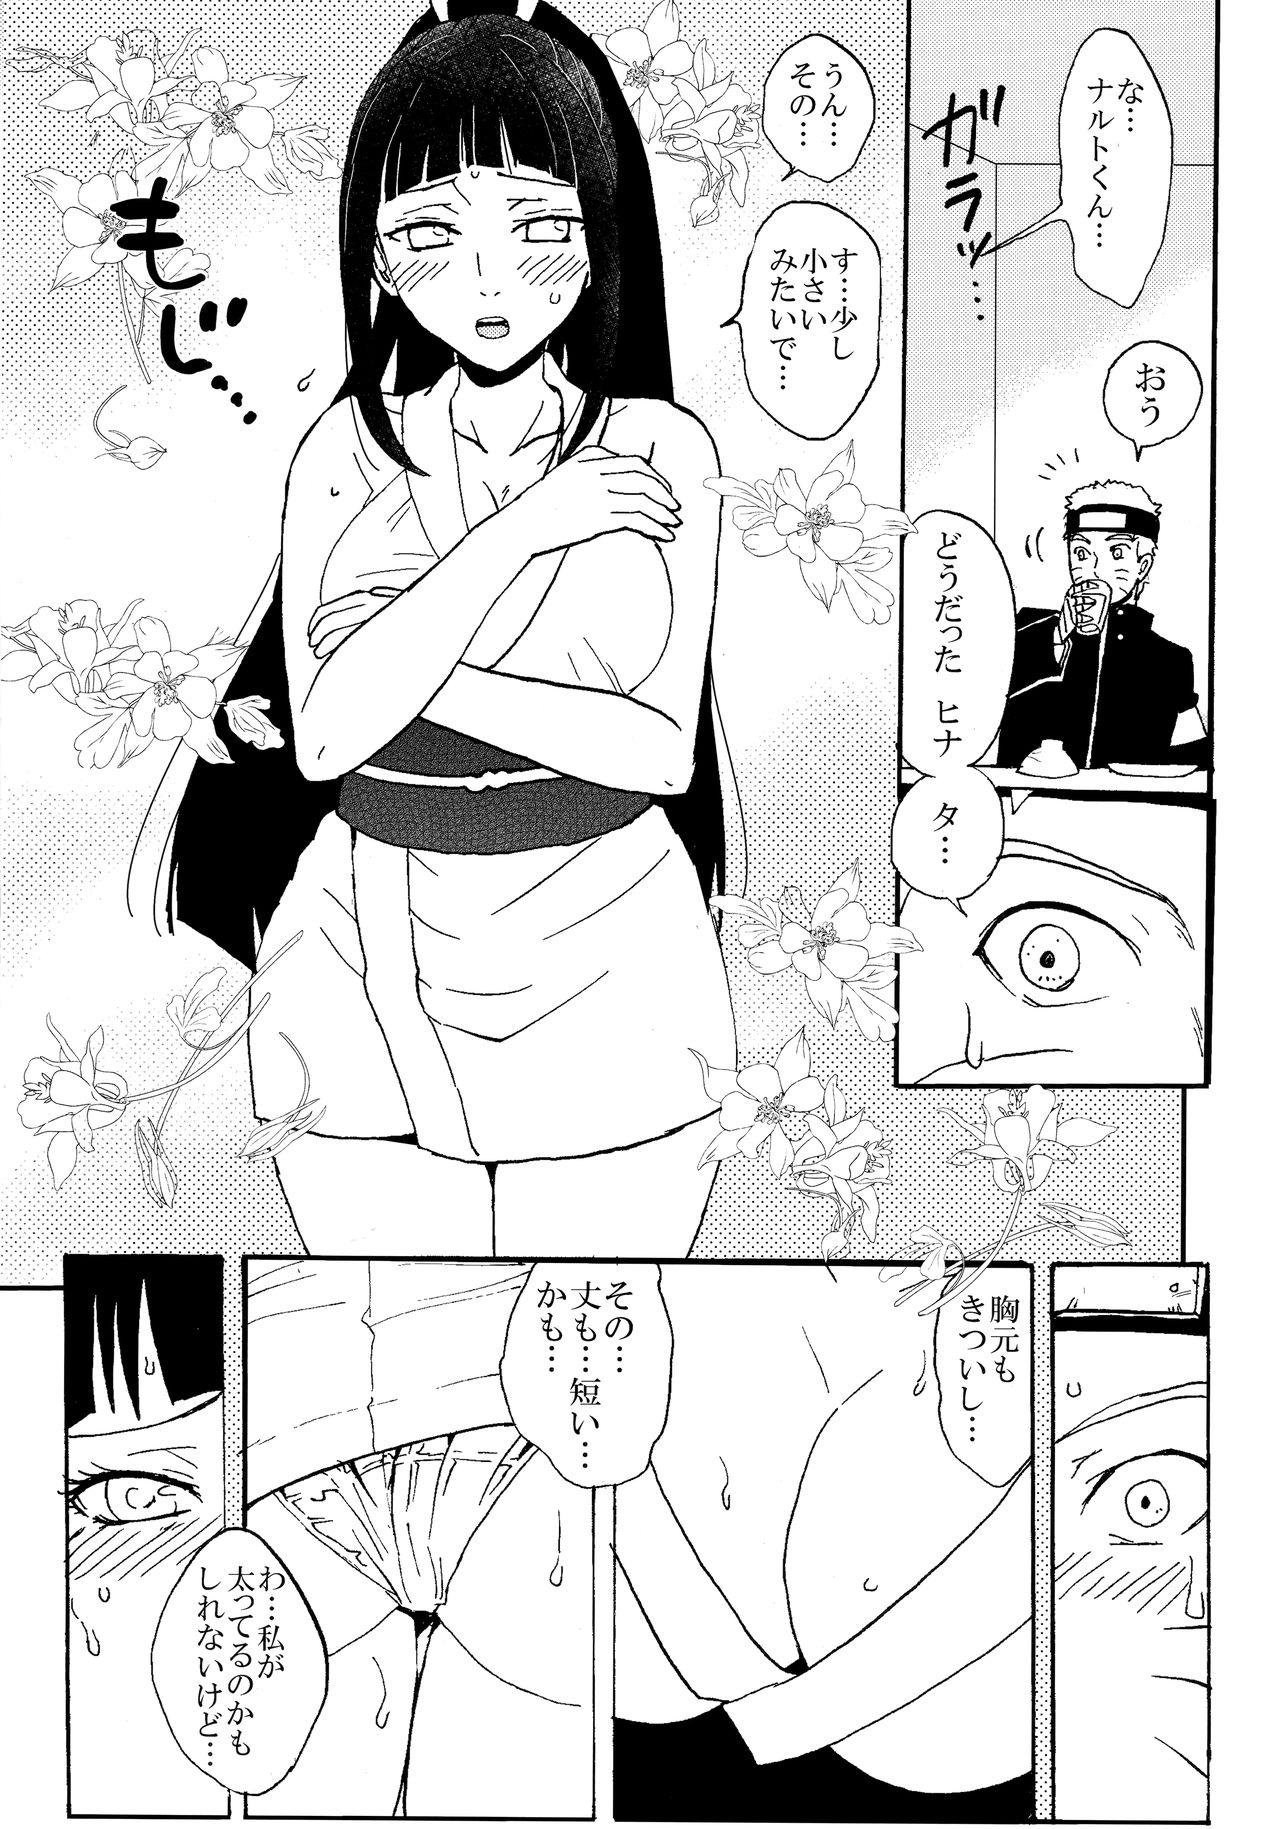 Big Boobs Shinkon Hinata no Kunoichi Cosplay datteba yo! - Naruto Teen - Page 4